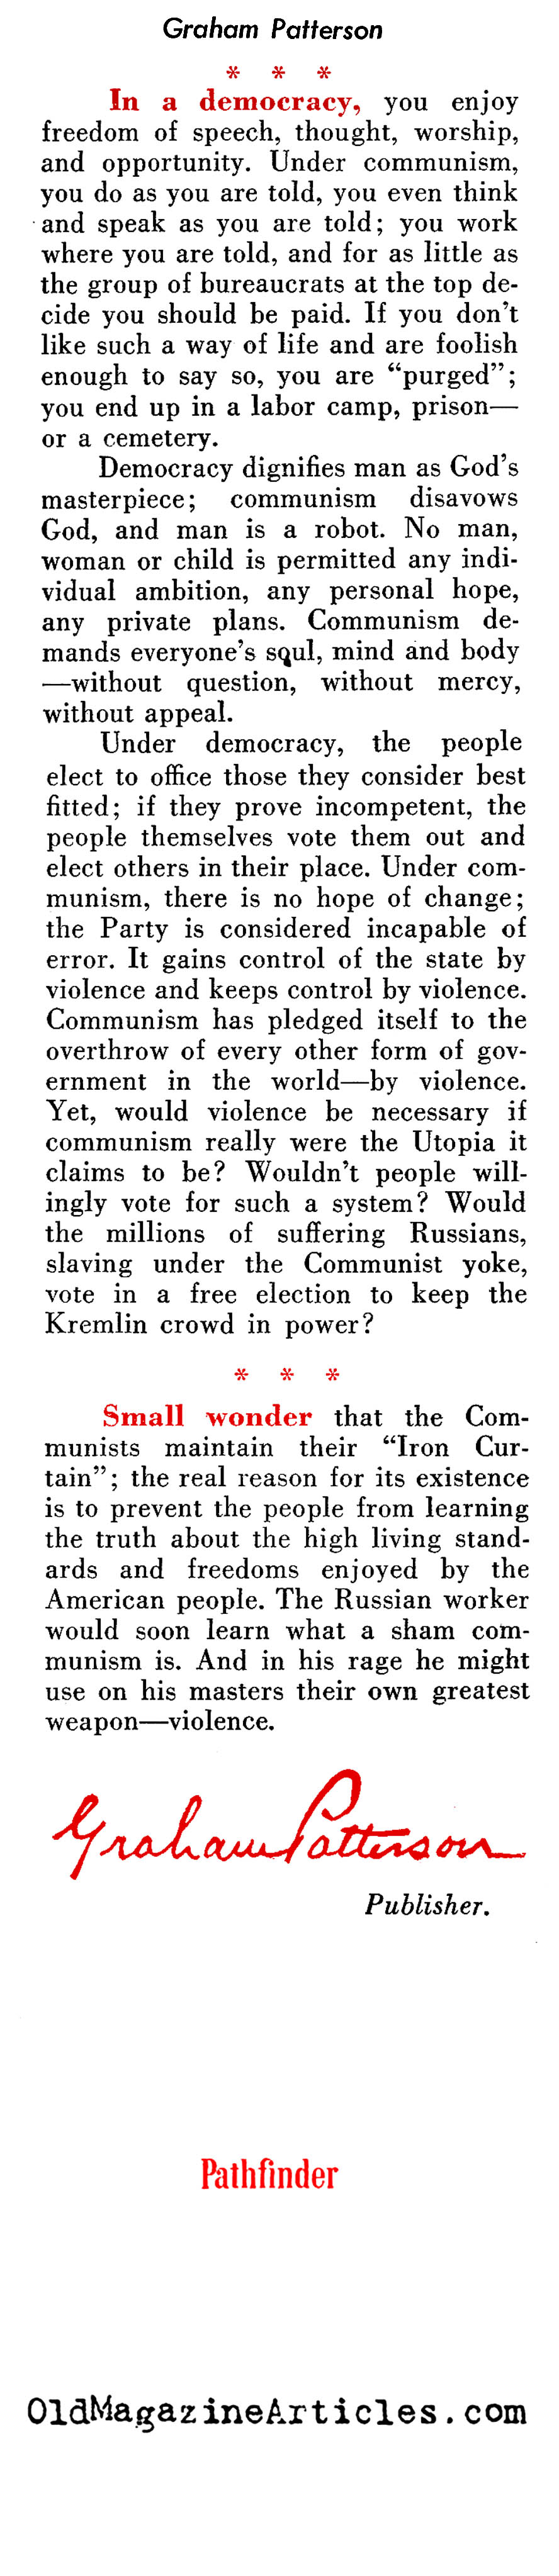 Communism vs Democracy (Pathfinder Magazine, 1950)